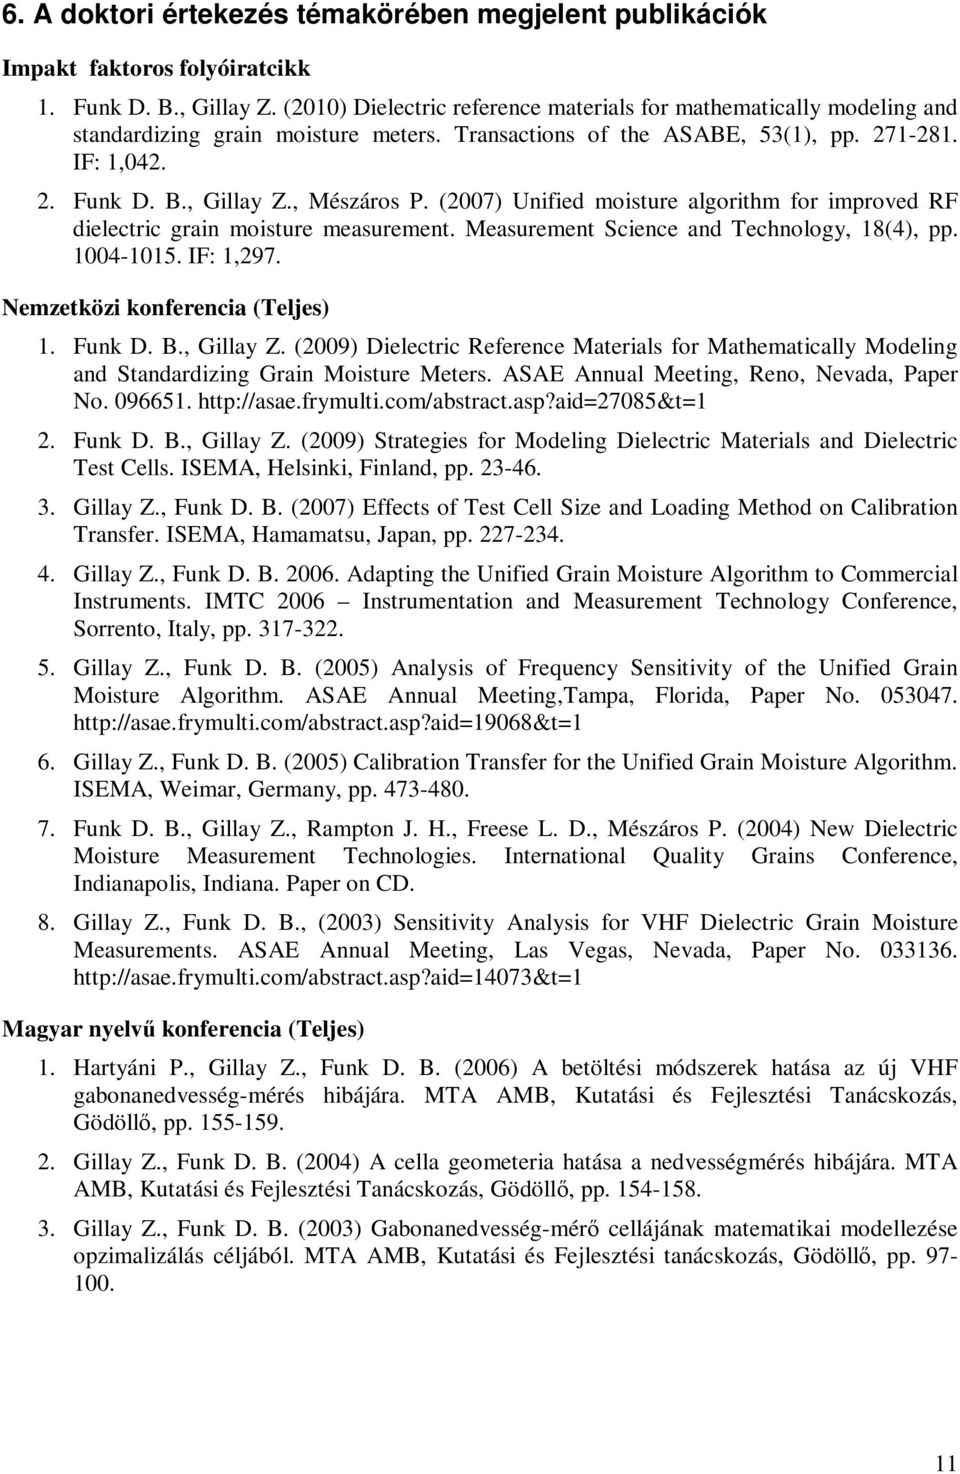 , Mészáros P. (2007) Unified moisture algorithm for improved RF dielectric grain moisture measurement. Measurement Science and Technology, 18(4), pp. 1004-1015. IF: 1,297.